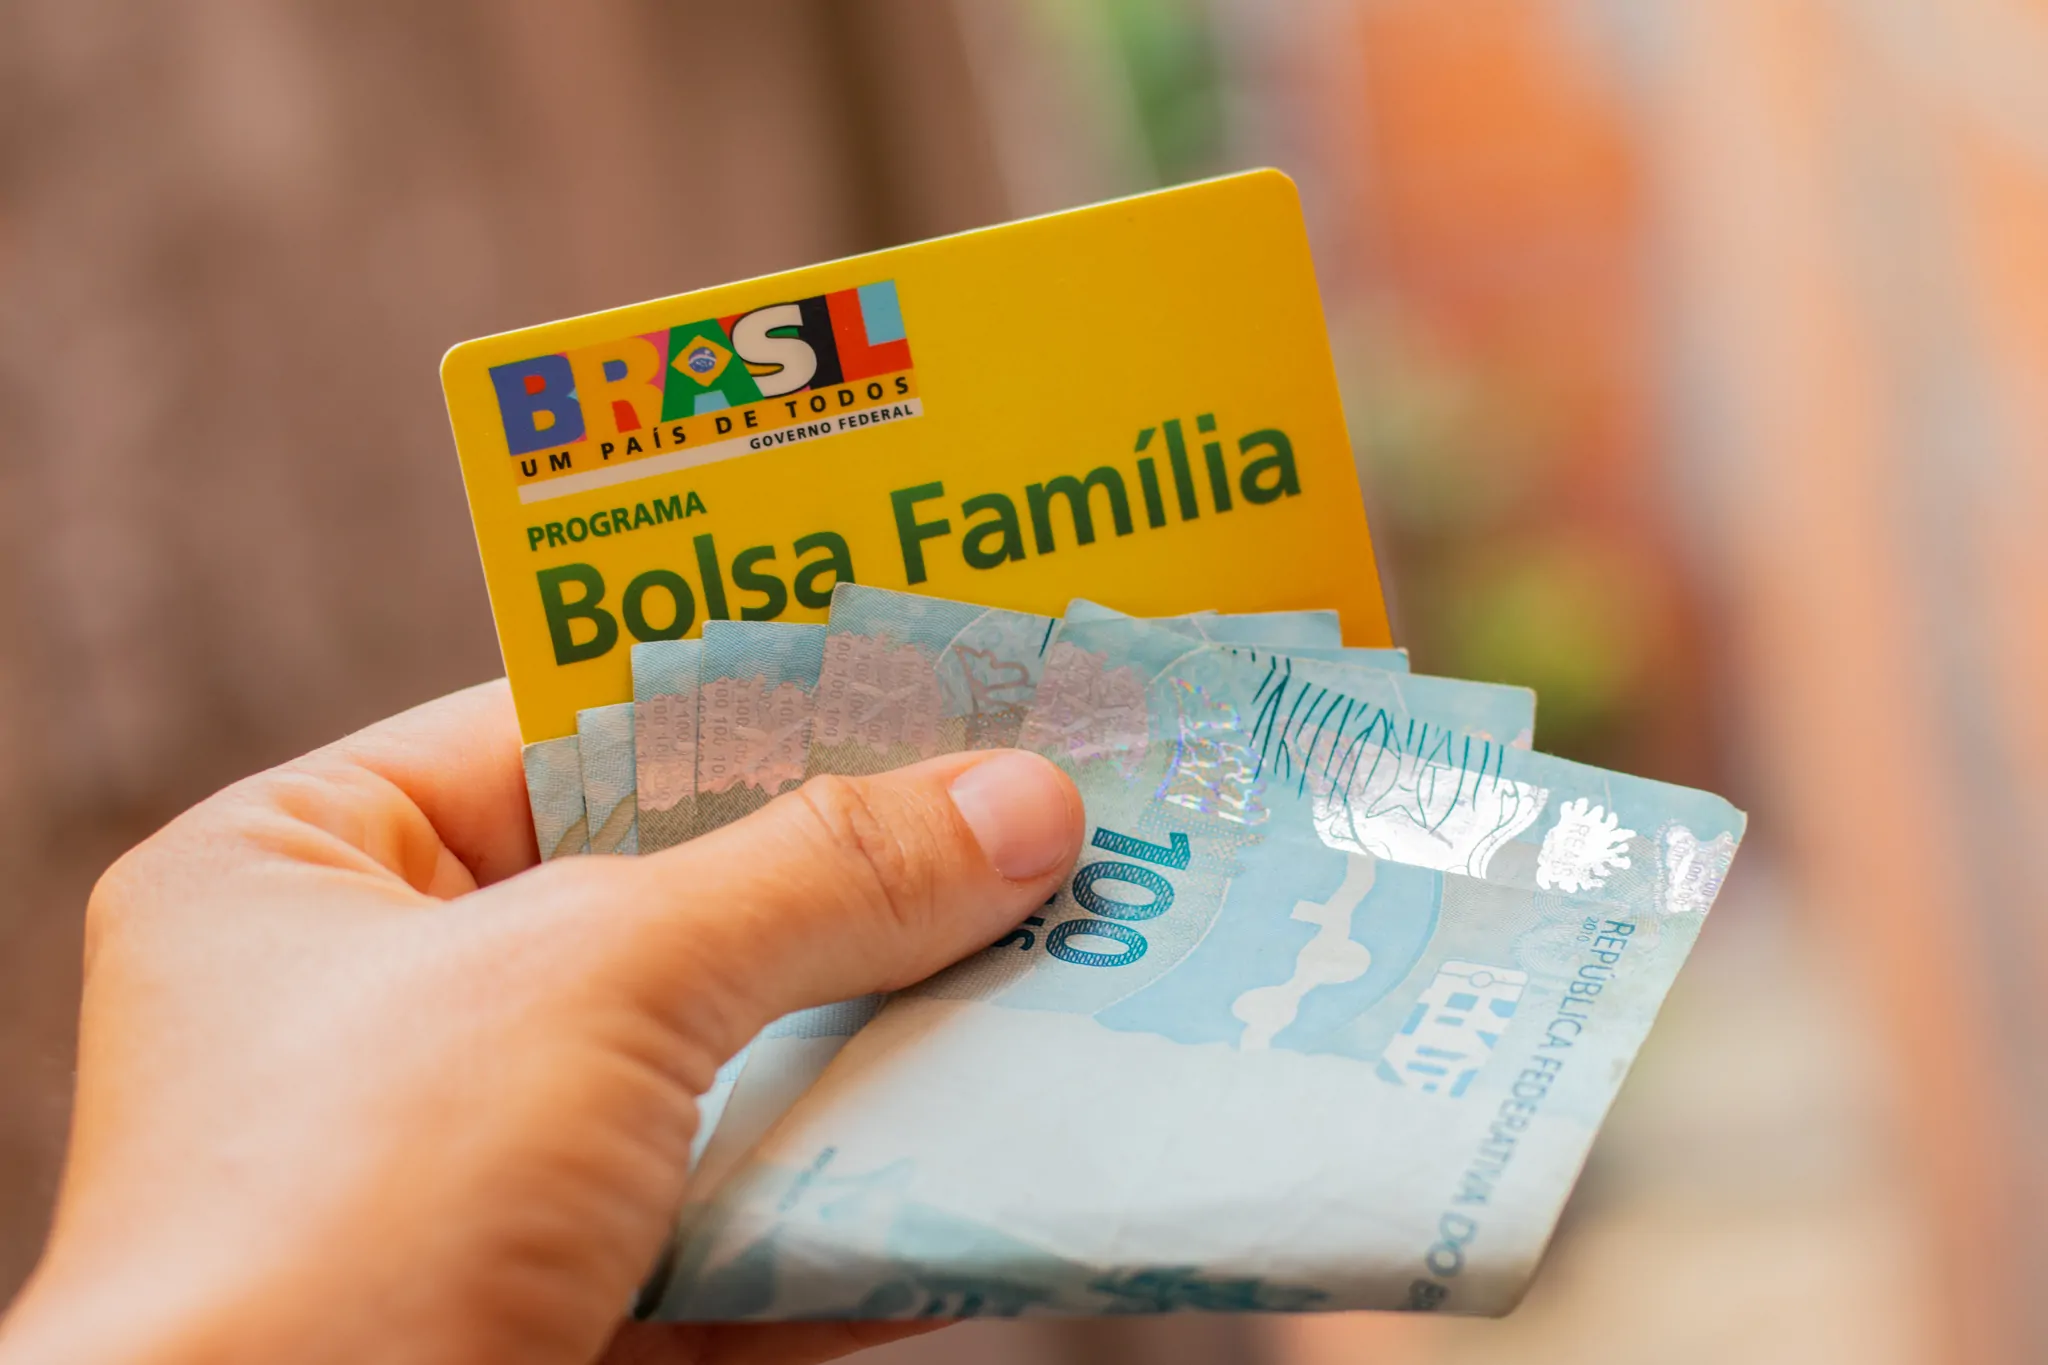 FRAUDE no Bolsa Família pode atingir NEGATIVAMENTE o benefício de milhares de brasileiros